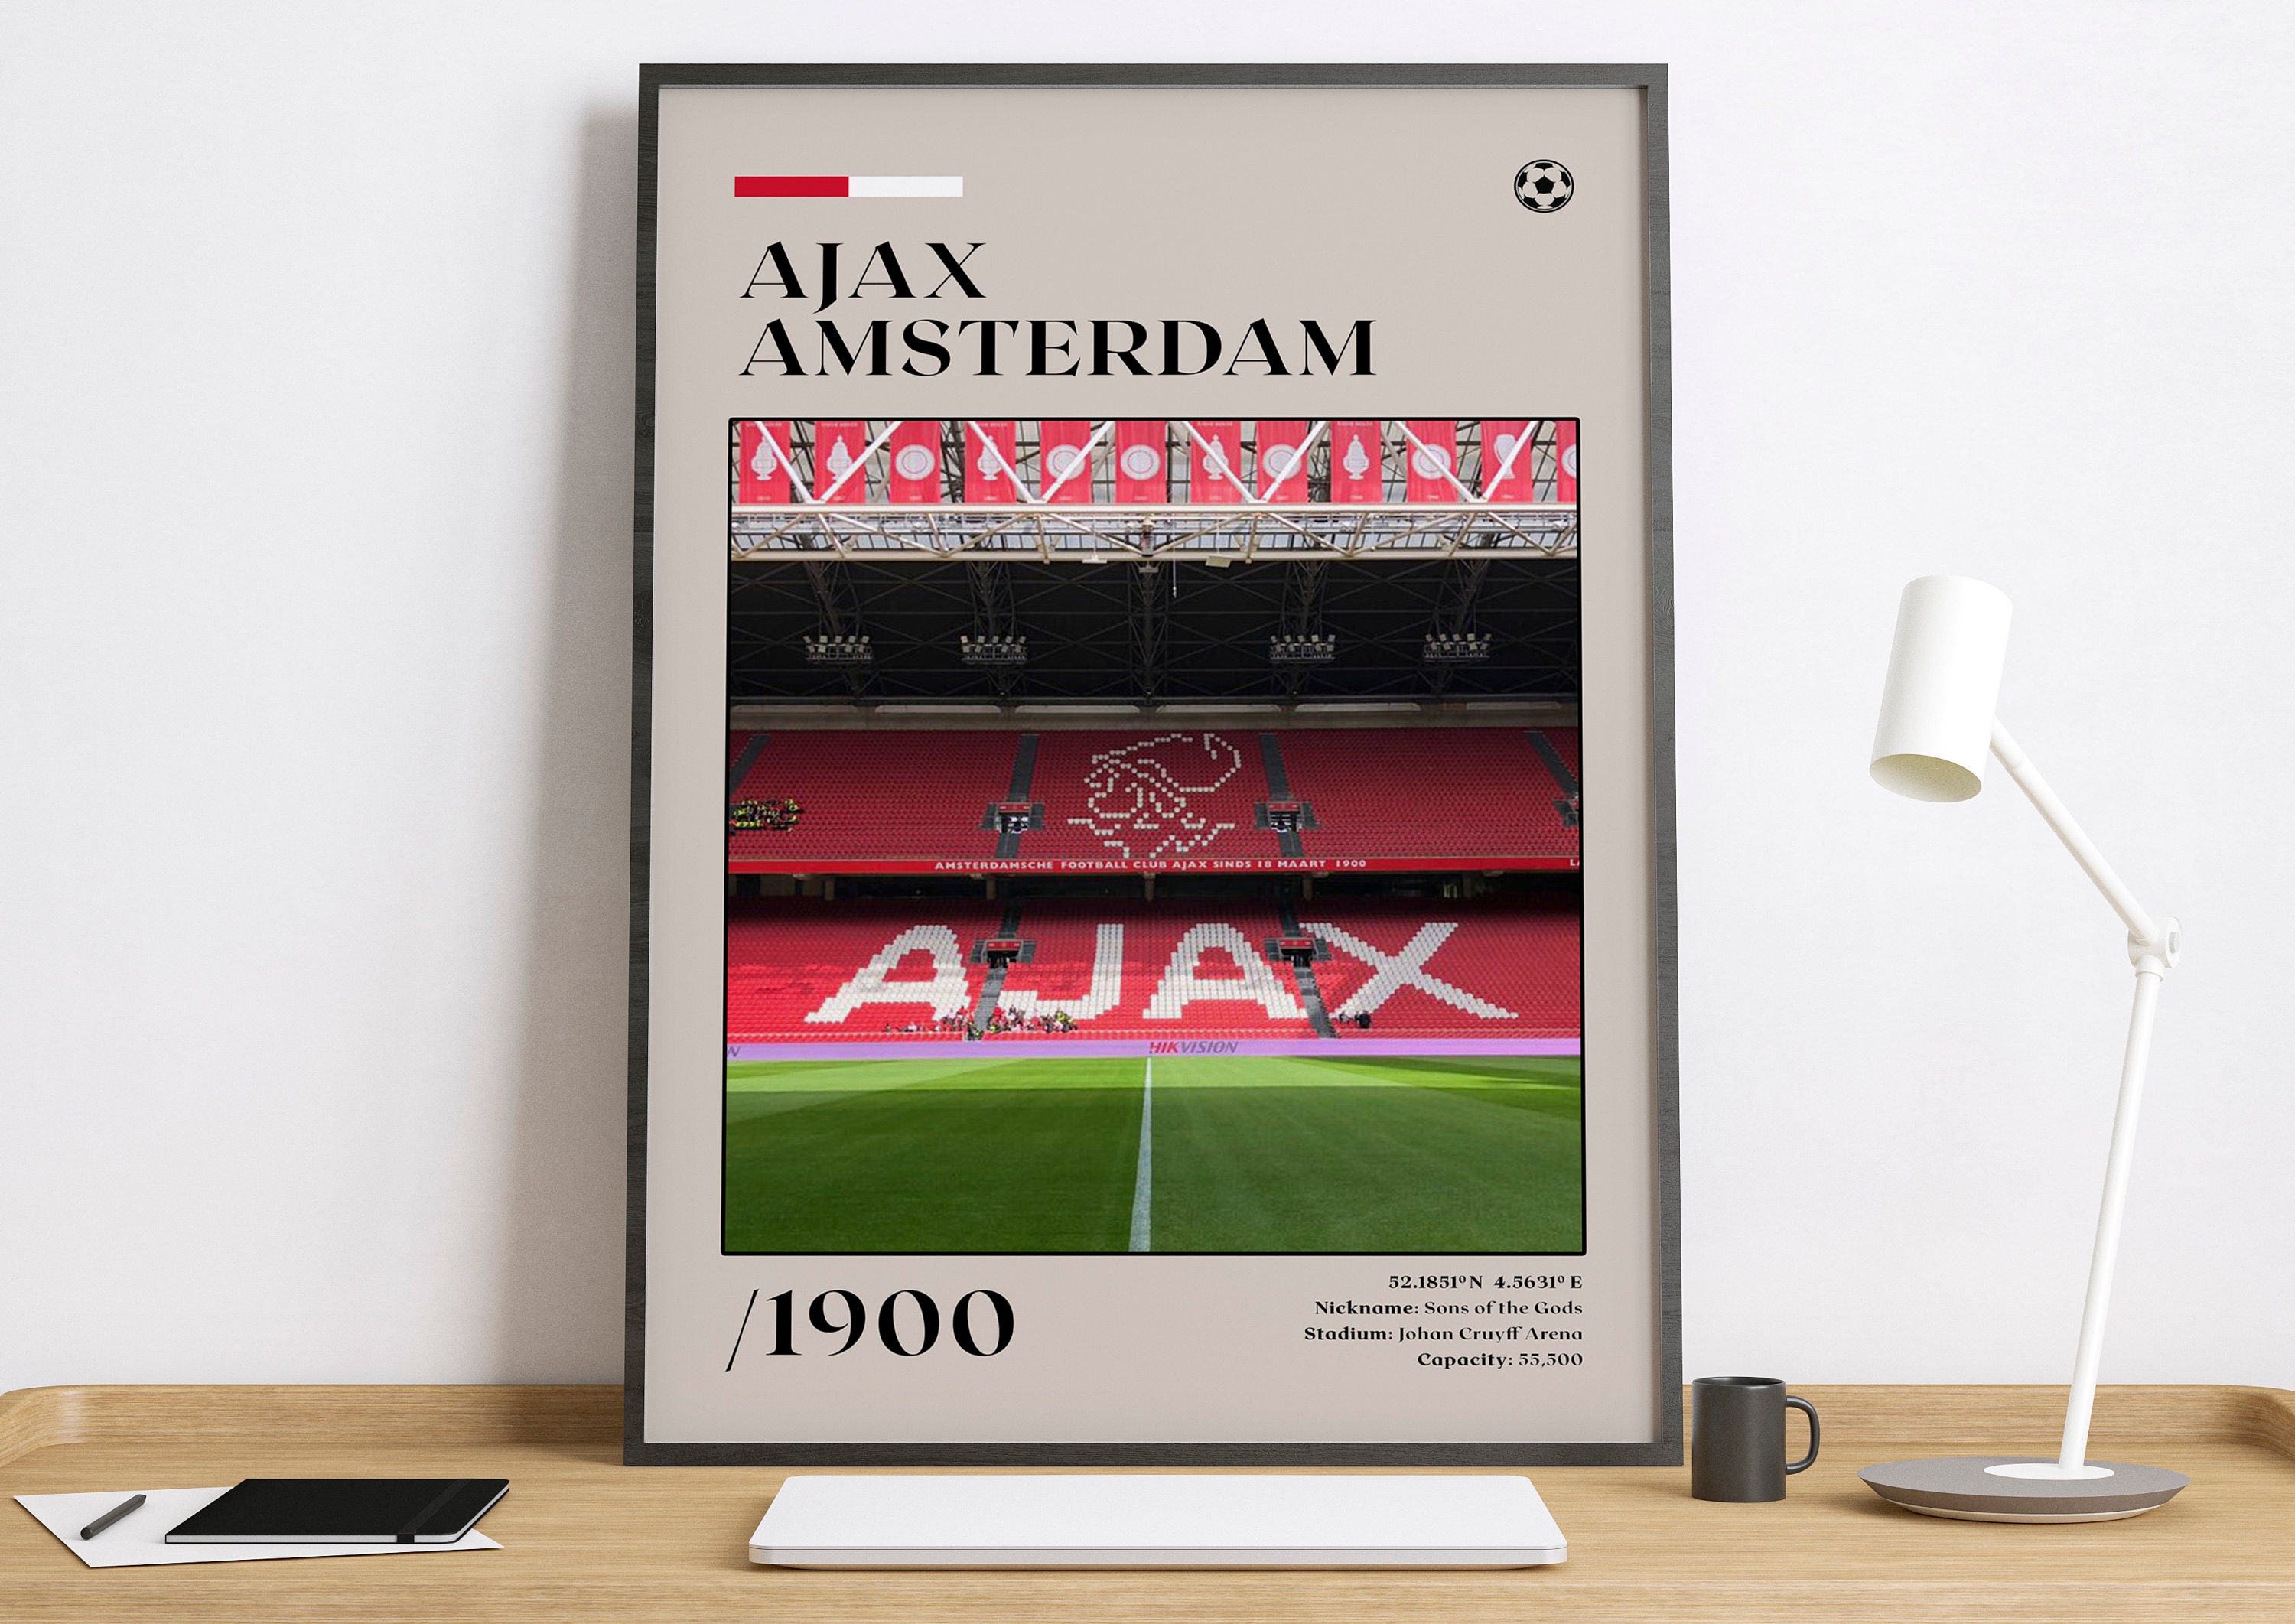 HWC Trading Johan Cruyff A4 Encadré Signé Image Autographe Imprimé Impression Photo Cadeau DAffichage pour Holland Fans De Football 